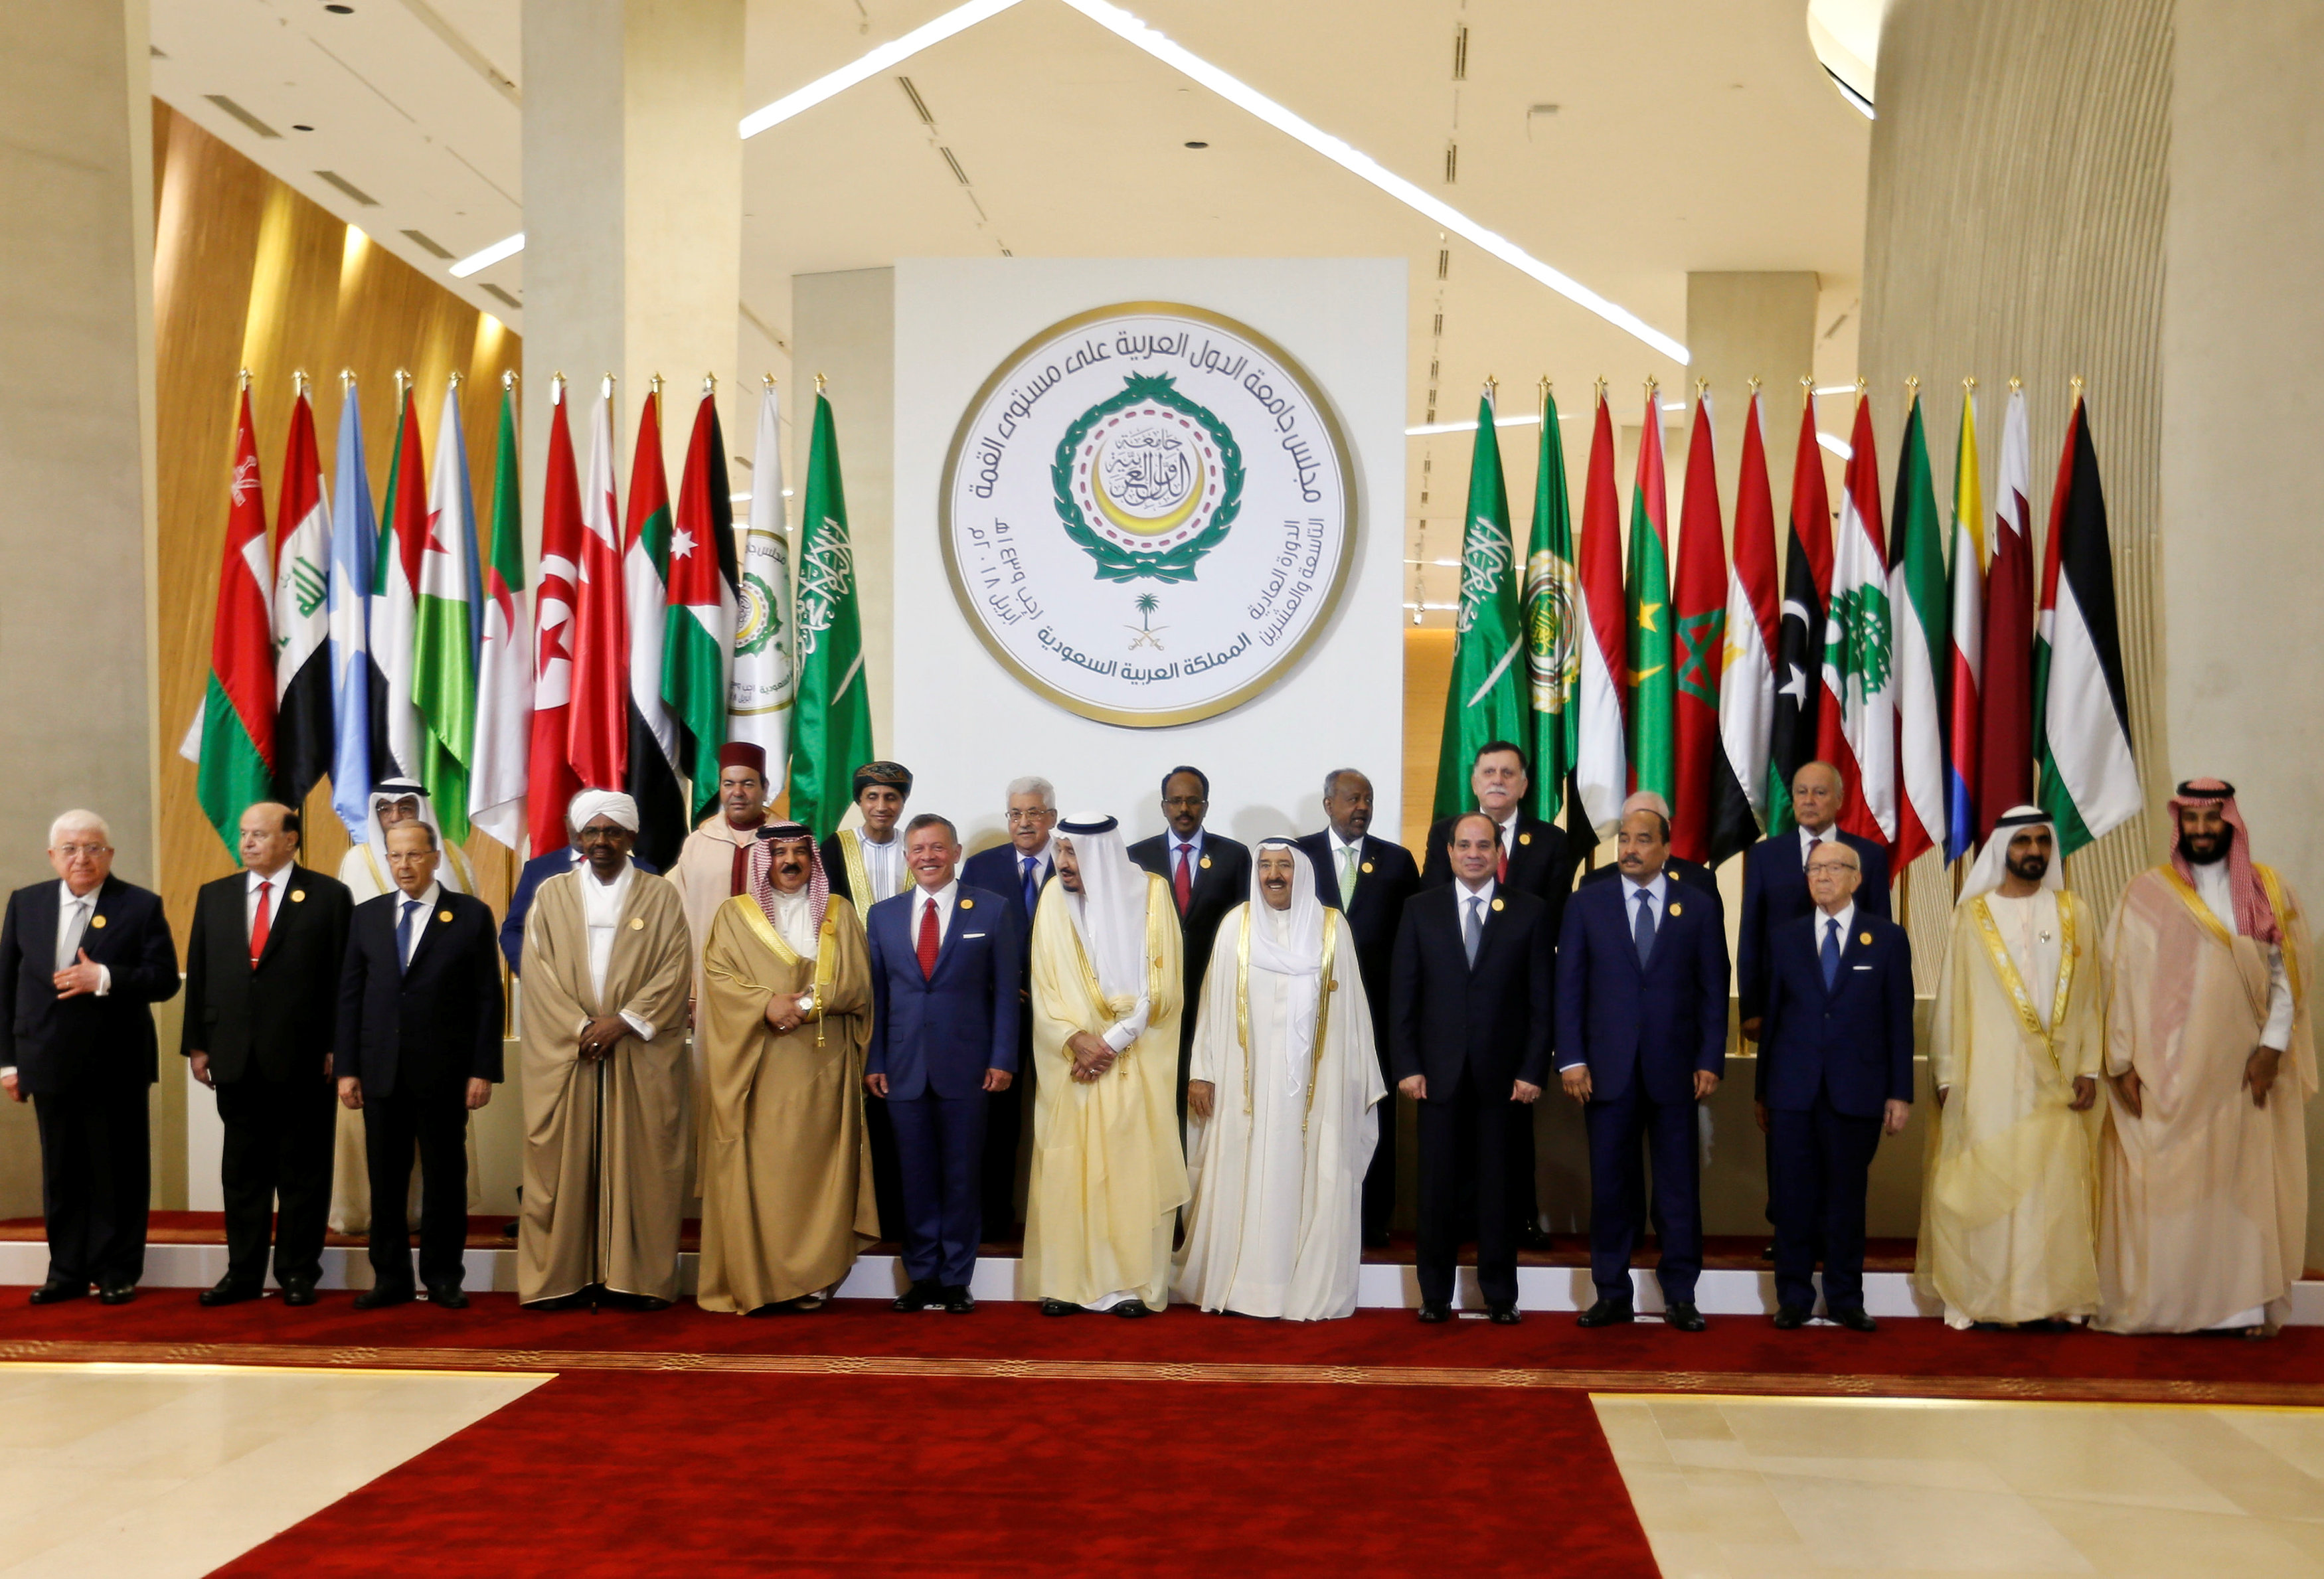 La cumbre de la Liga Árabe se abre en Arabia Saudí con críticas a Irán (Fotos)